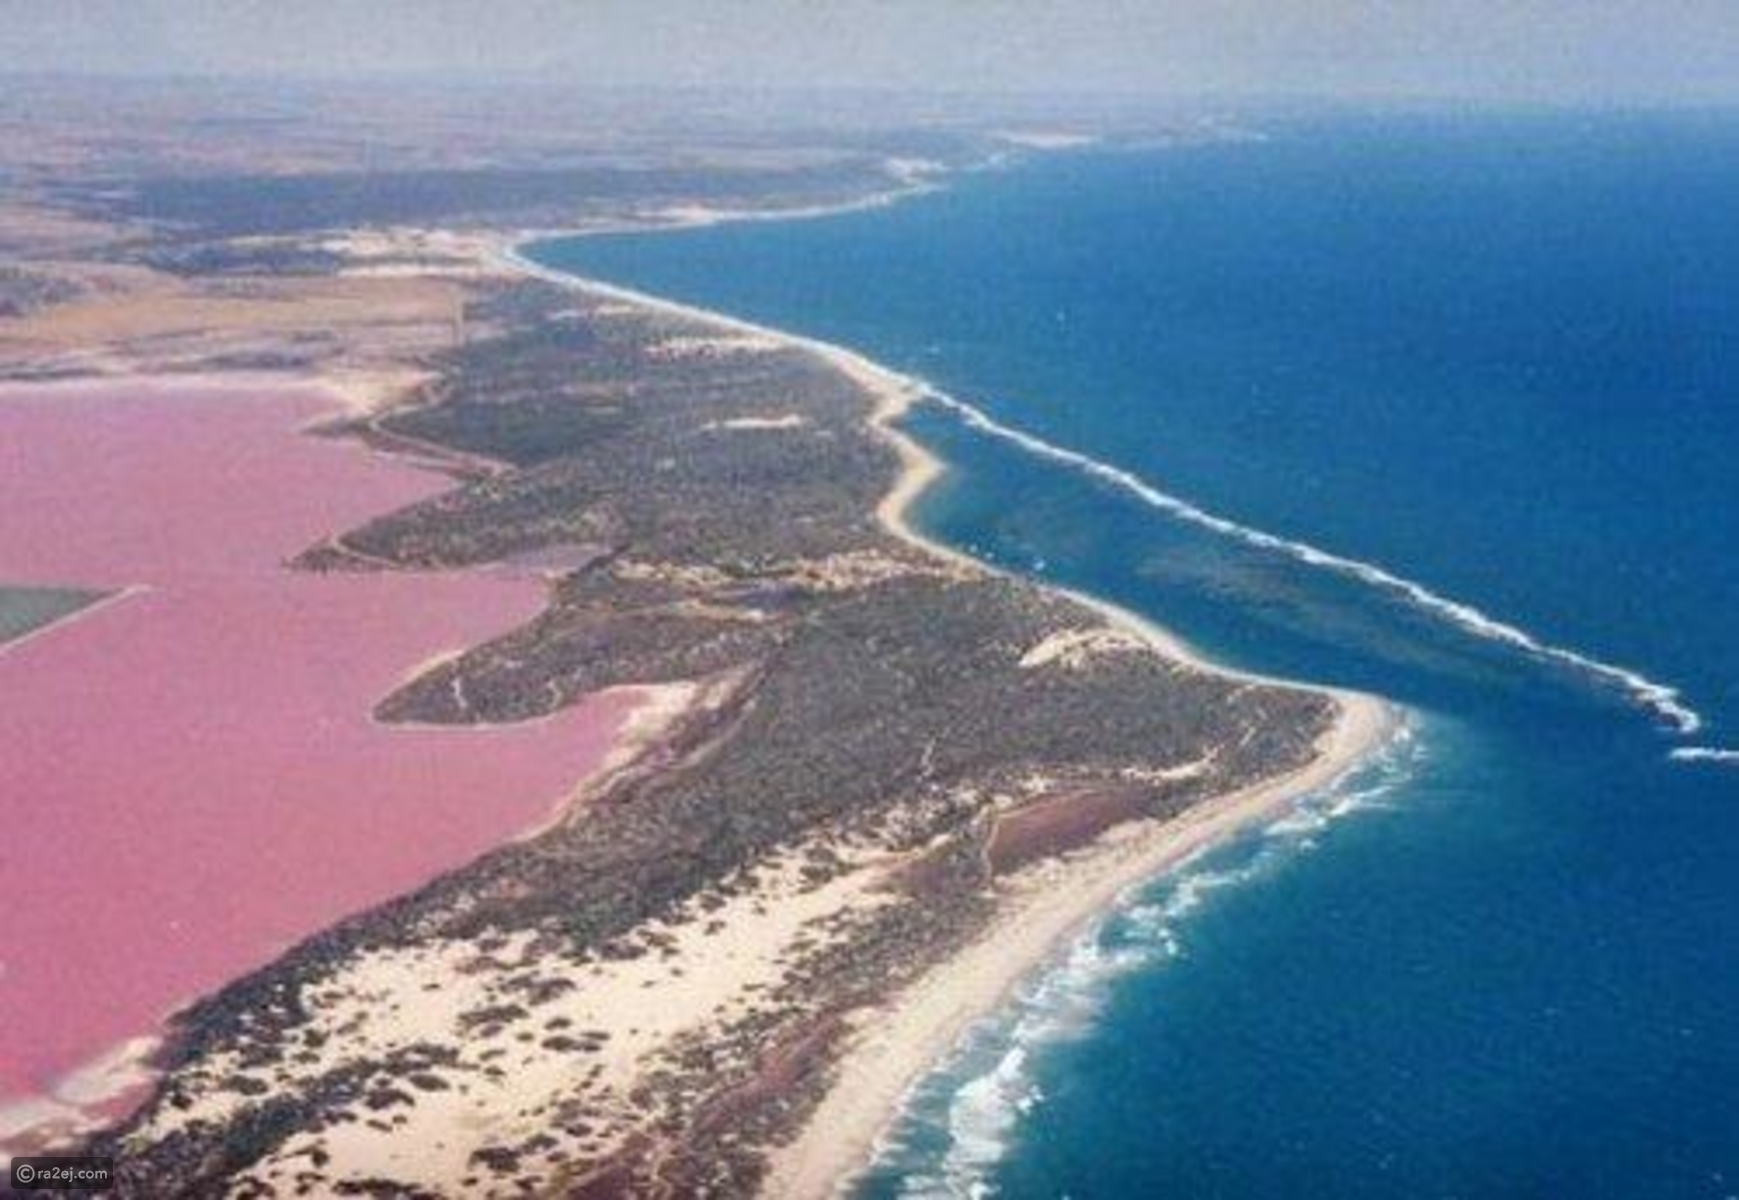 بحيرة هيلير أو البحيرة الوردية في غرب أستراليا 43811ac24e6697f3ca436dd3cc89cce4173c73f4-041016125311.jpg?preset=v3